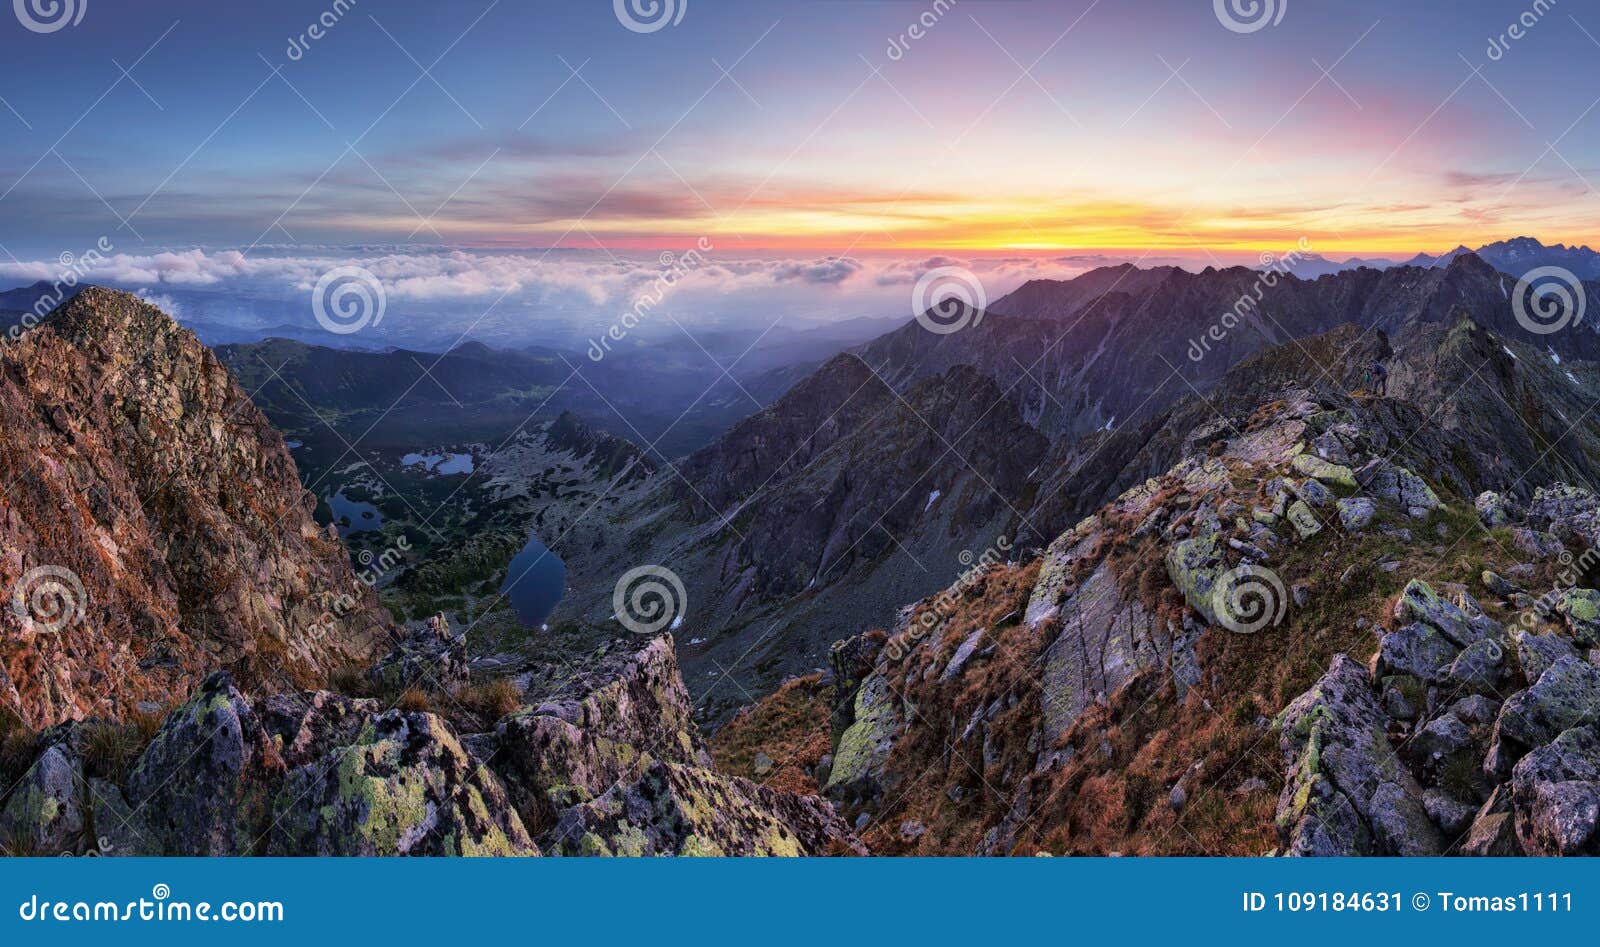 mountain landcape panorama at summer in poland tatras near zakopane from peak swinica